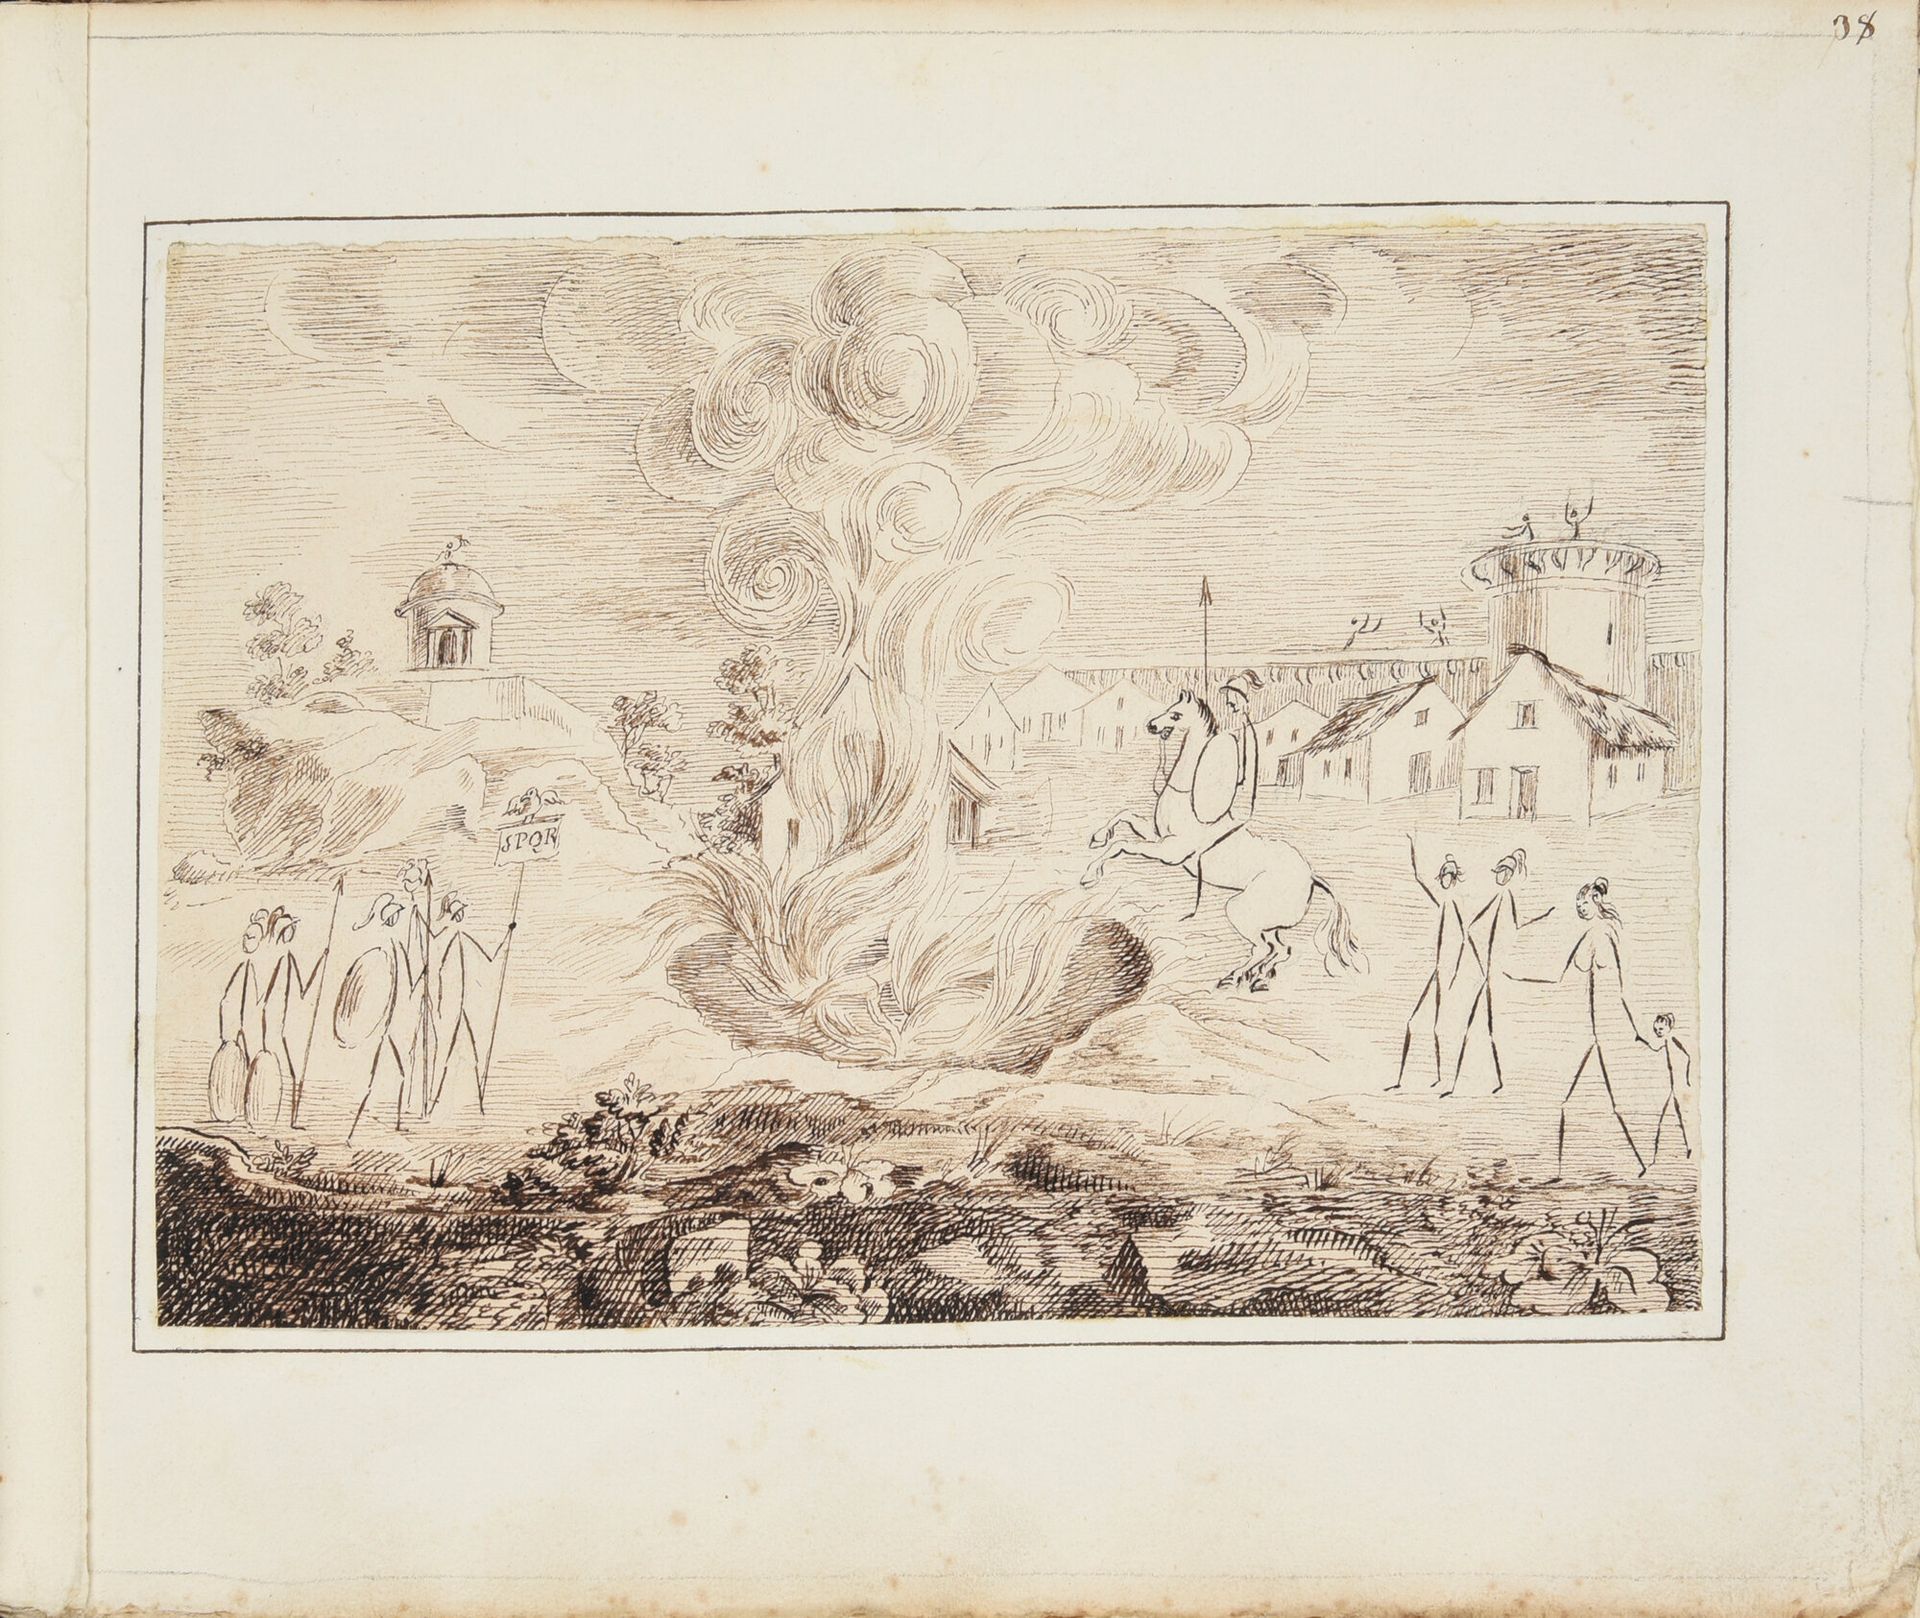 Null [Album de dessins] [Enigmes]
Recueil de dessins-énigmes, vers 1830.
Un volu&hellip;